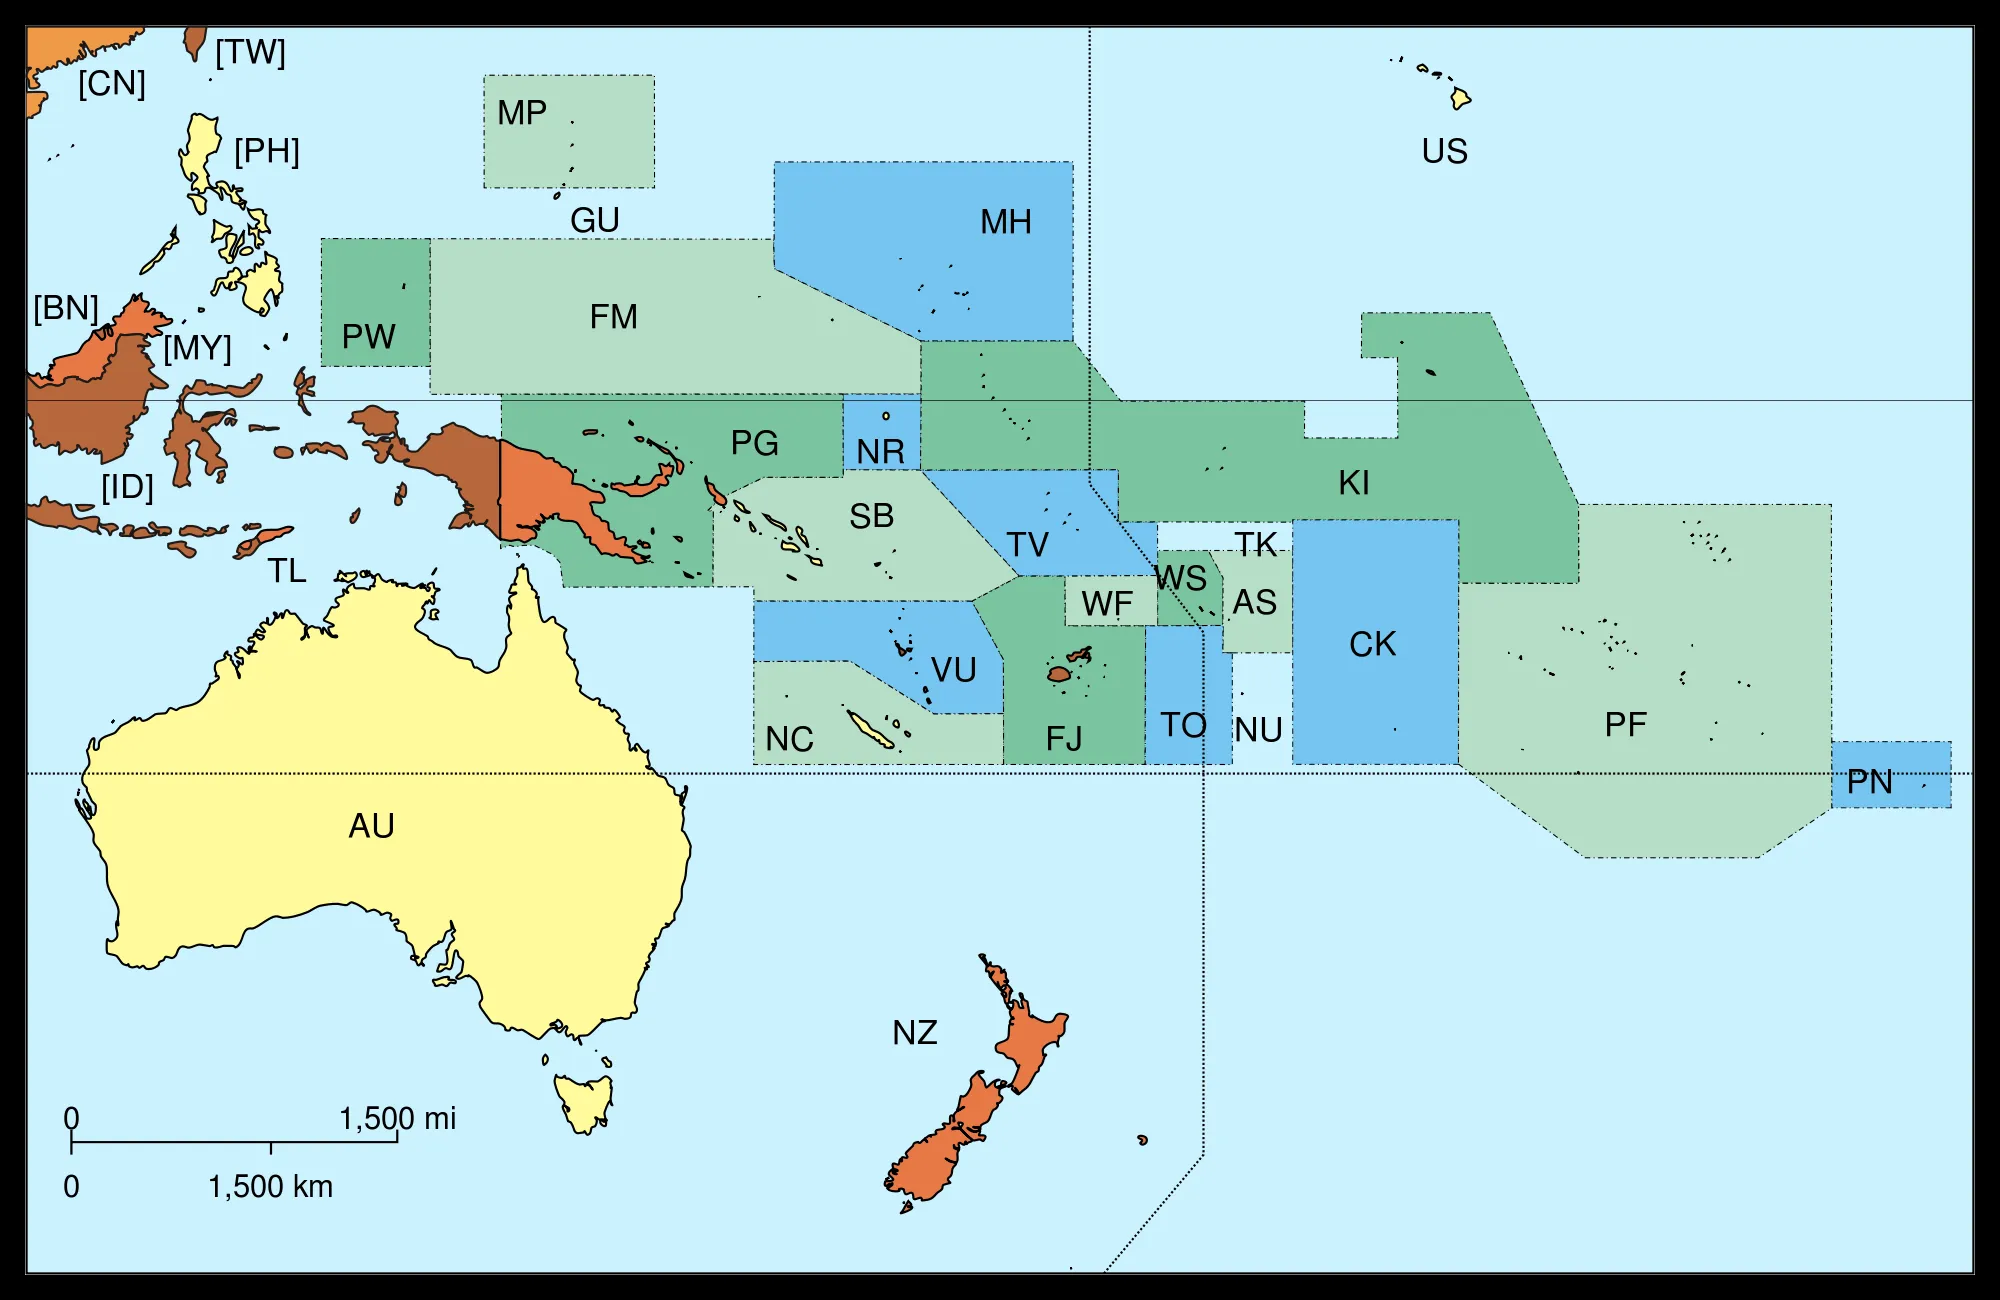 Mapa Politico de Oceanía - Tamaño completo